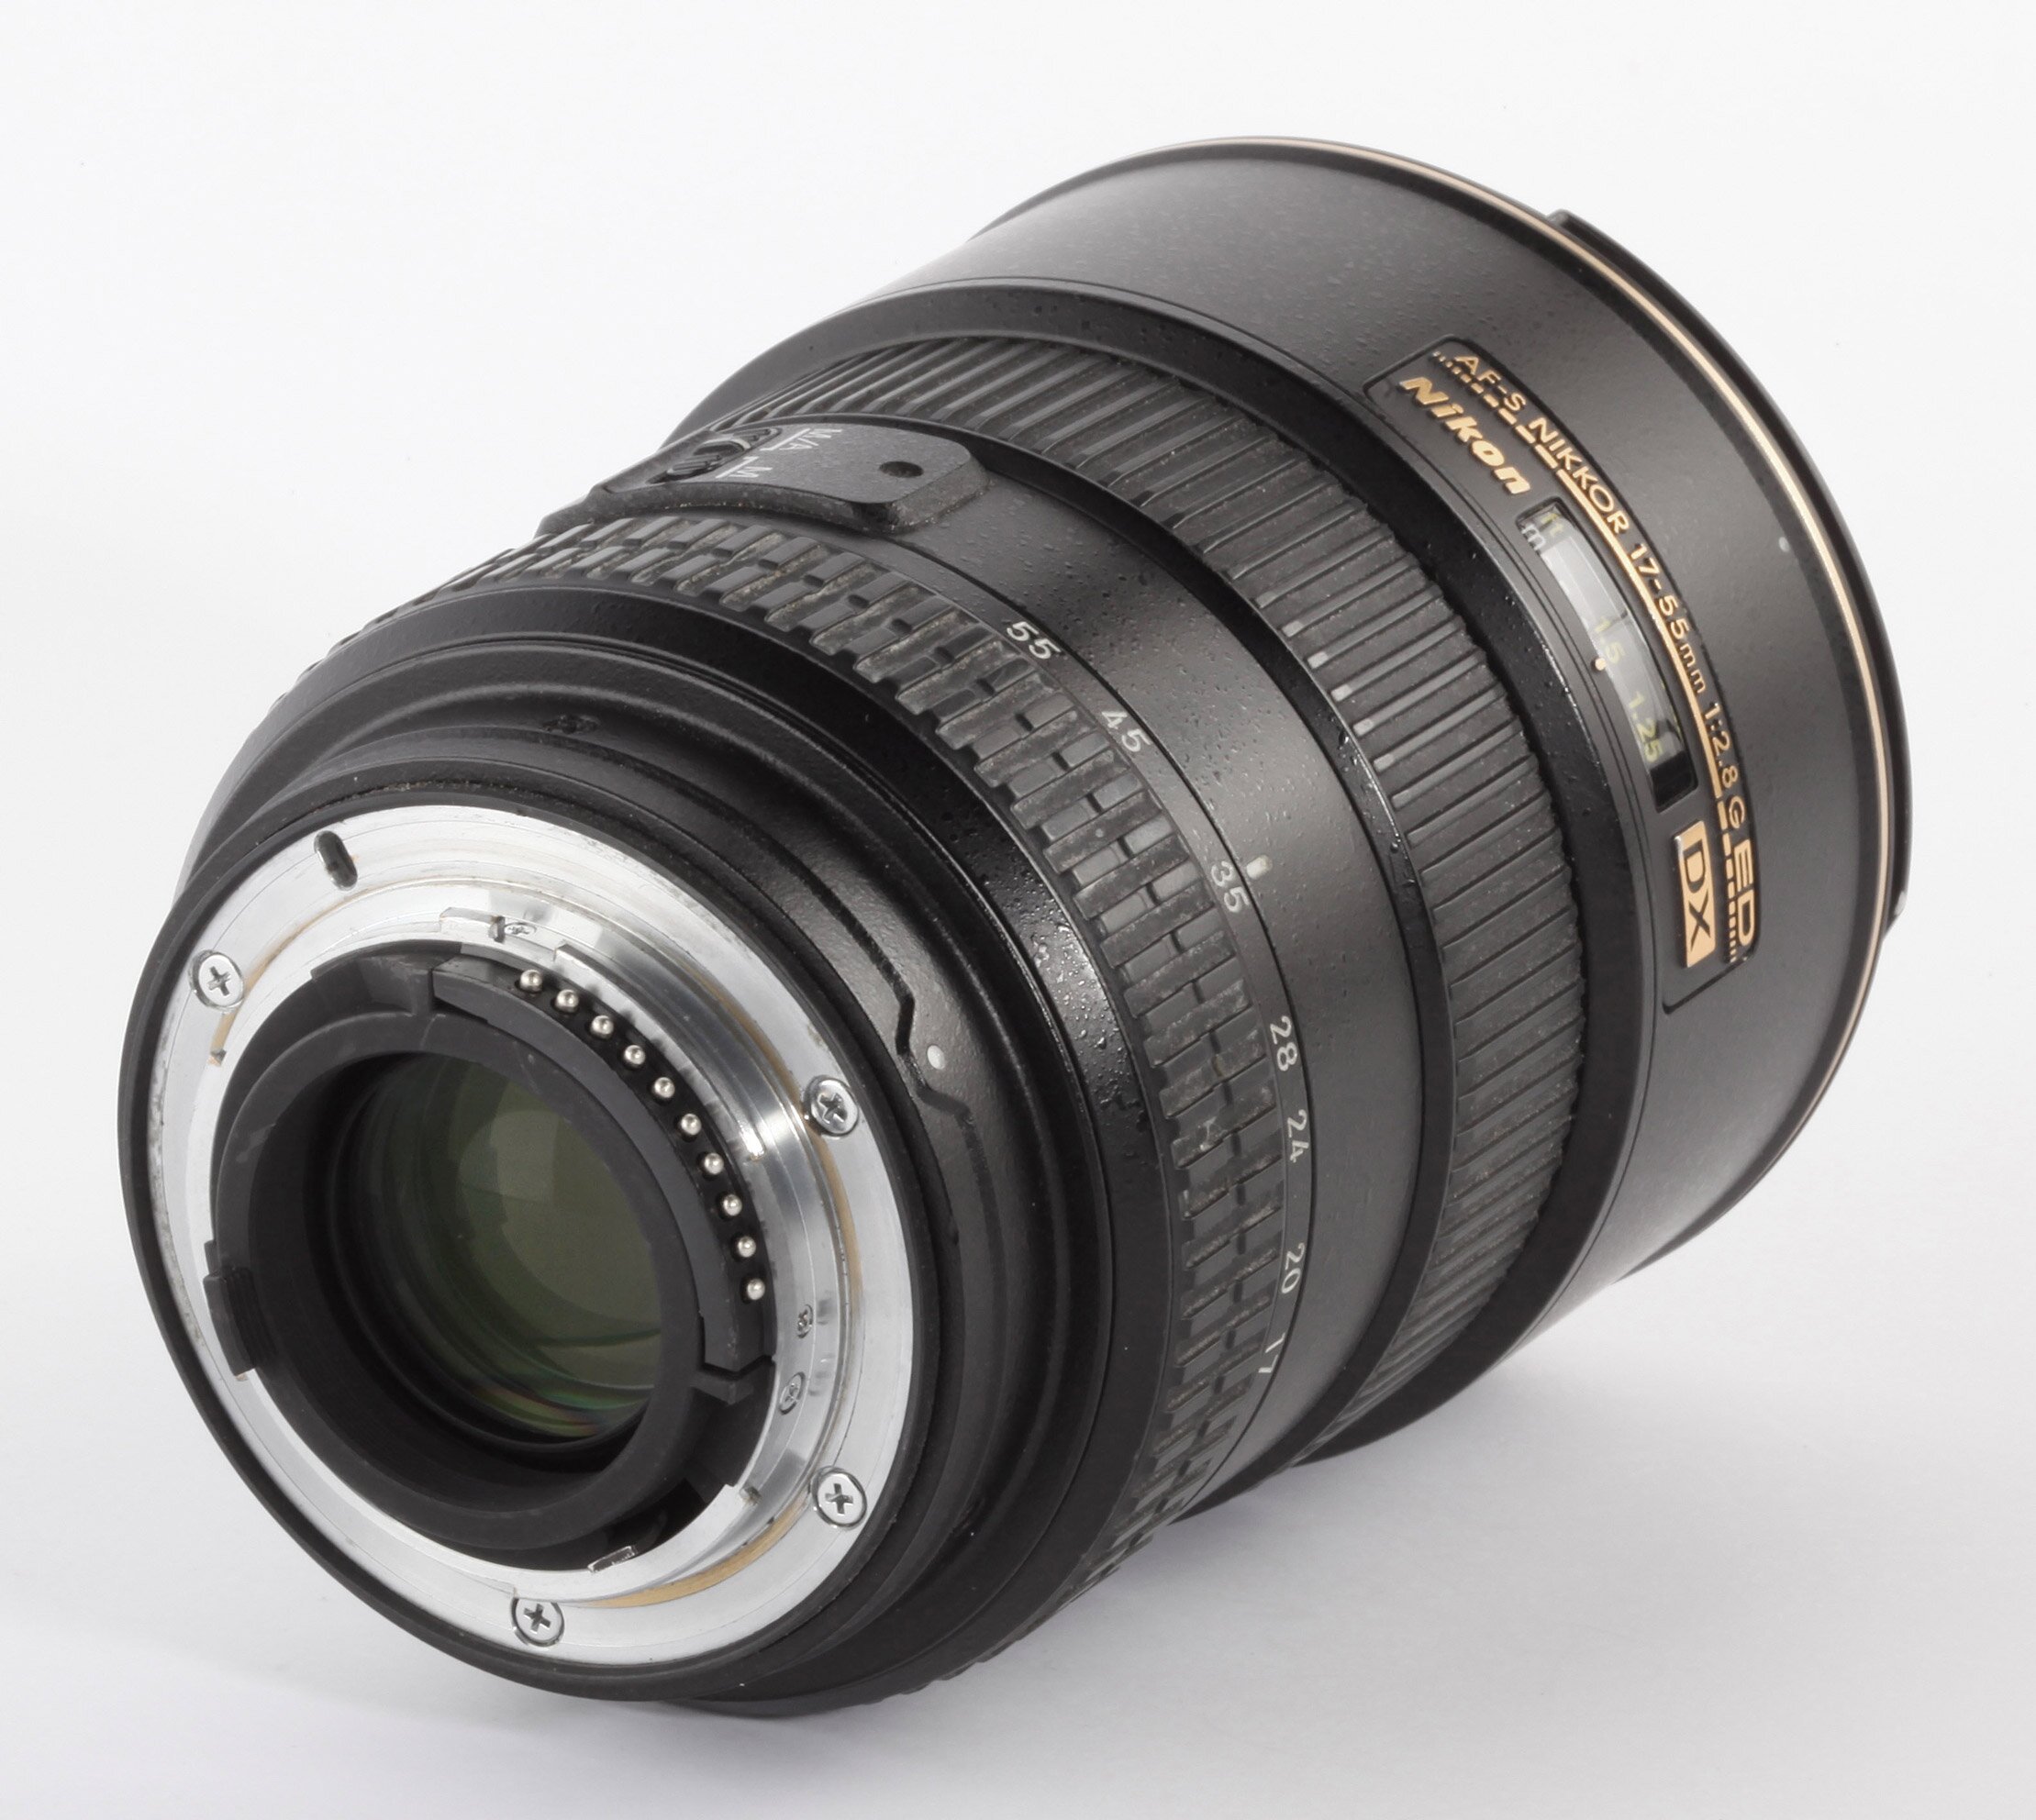 Nikon AF-S DX Zoom-Nikkor 17-55mm 2,8G IF ED